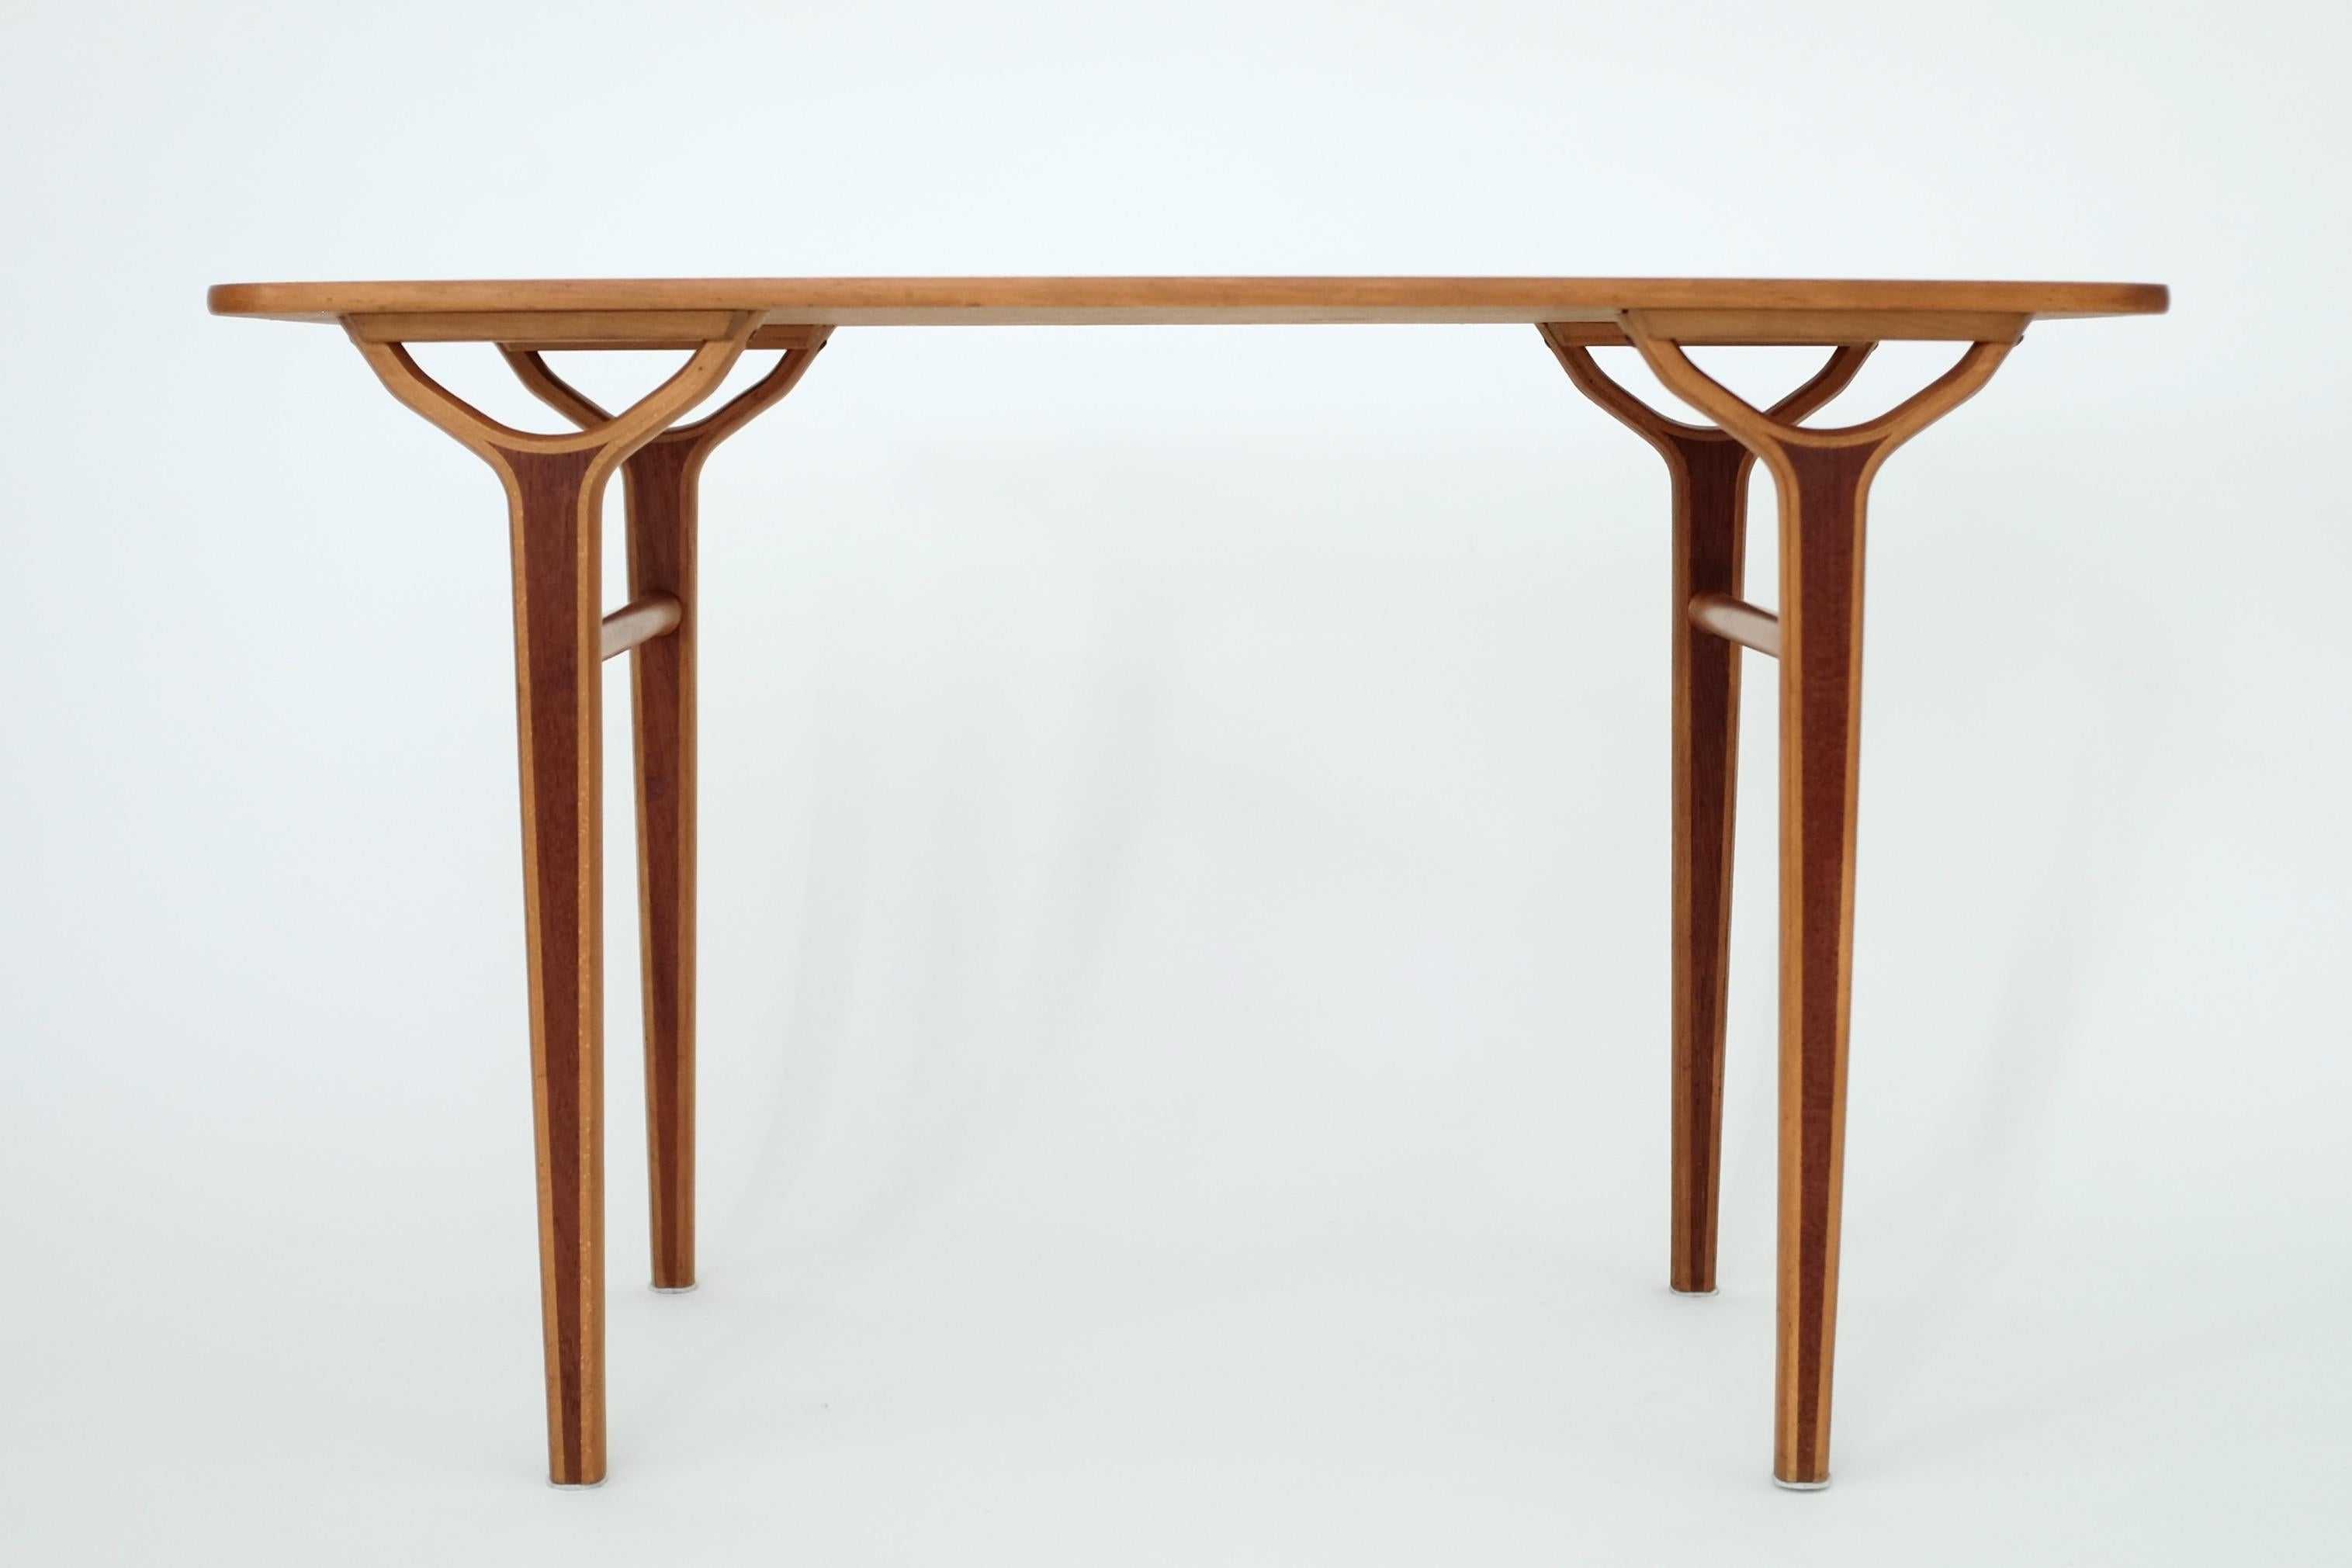 Schöner und seltener Beistelltisch aus den 1950er Jahren von Peter Hvidt & Orla Mølgaard-Nielsen für Fritz Hansen. Er gehörte zur AX-Serie, die von den beiden Designern für FH entworfen wurde, und umfasste Tische und Stühle. Einlagen aus Teakholz an